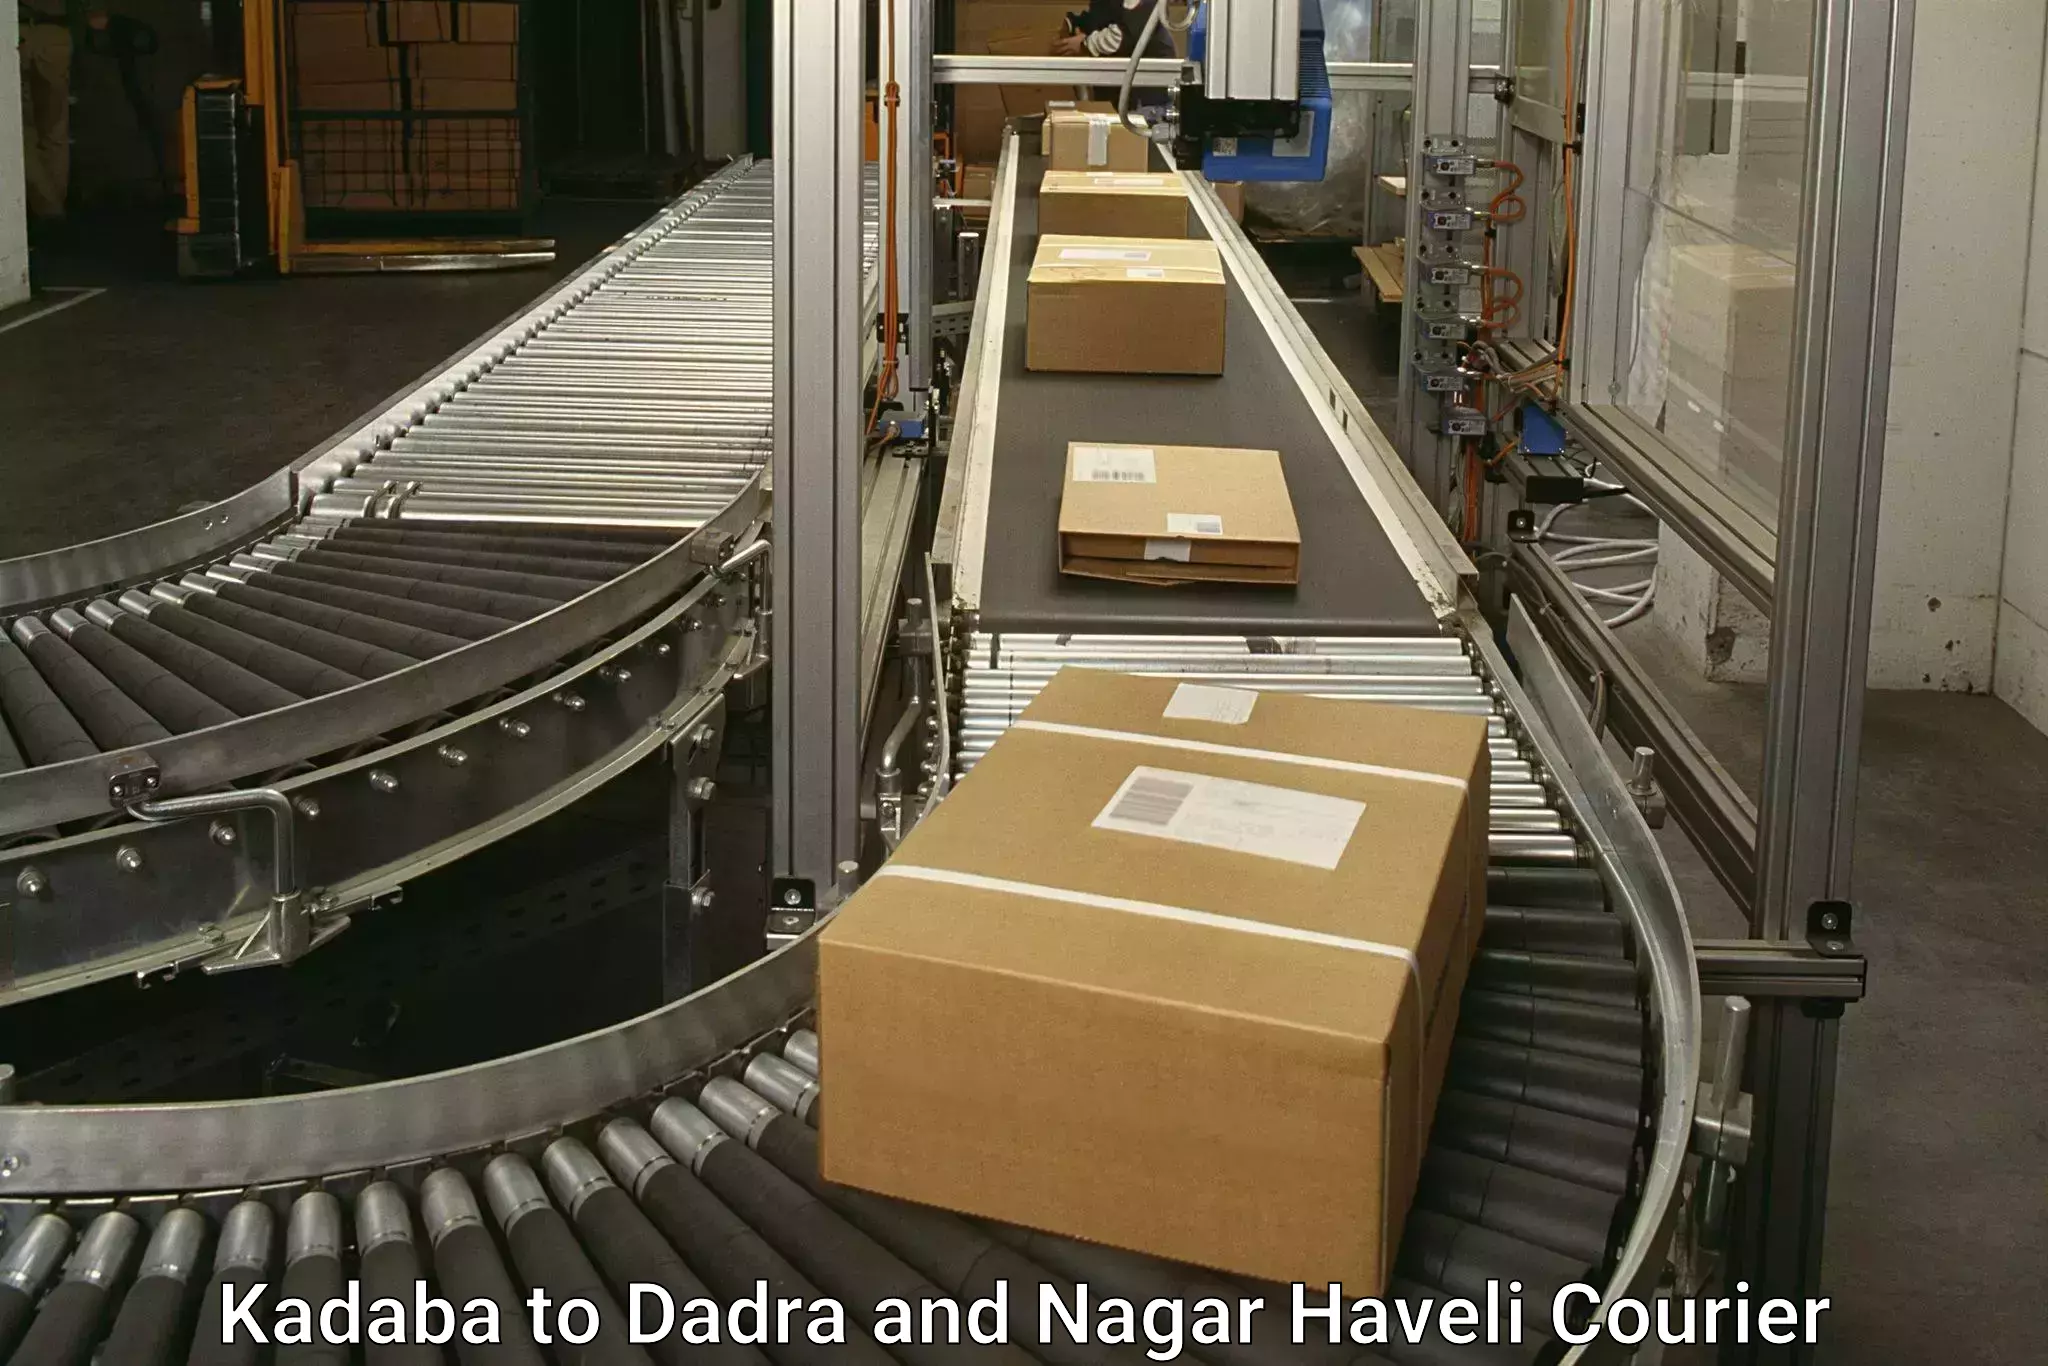 Expedited shipping solutions Kadaba to Dadra and Nagar Haveli